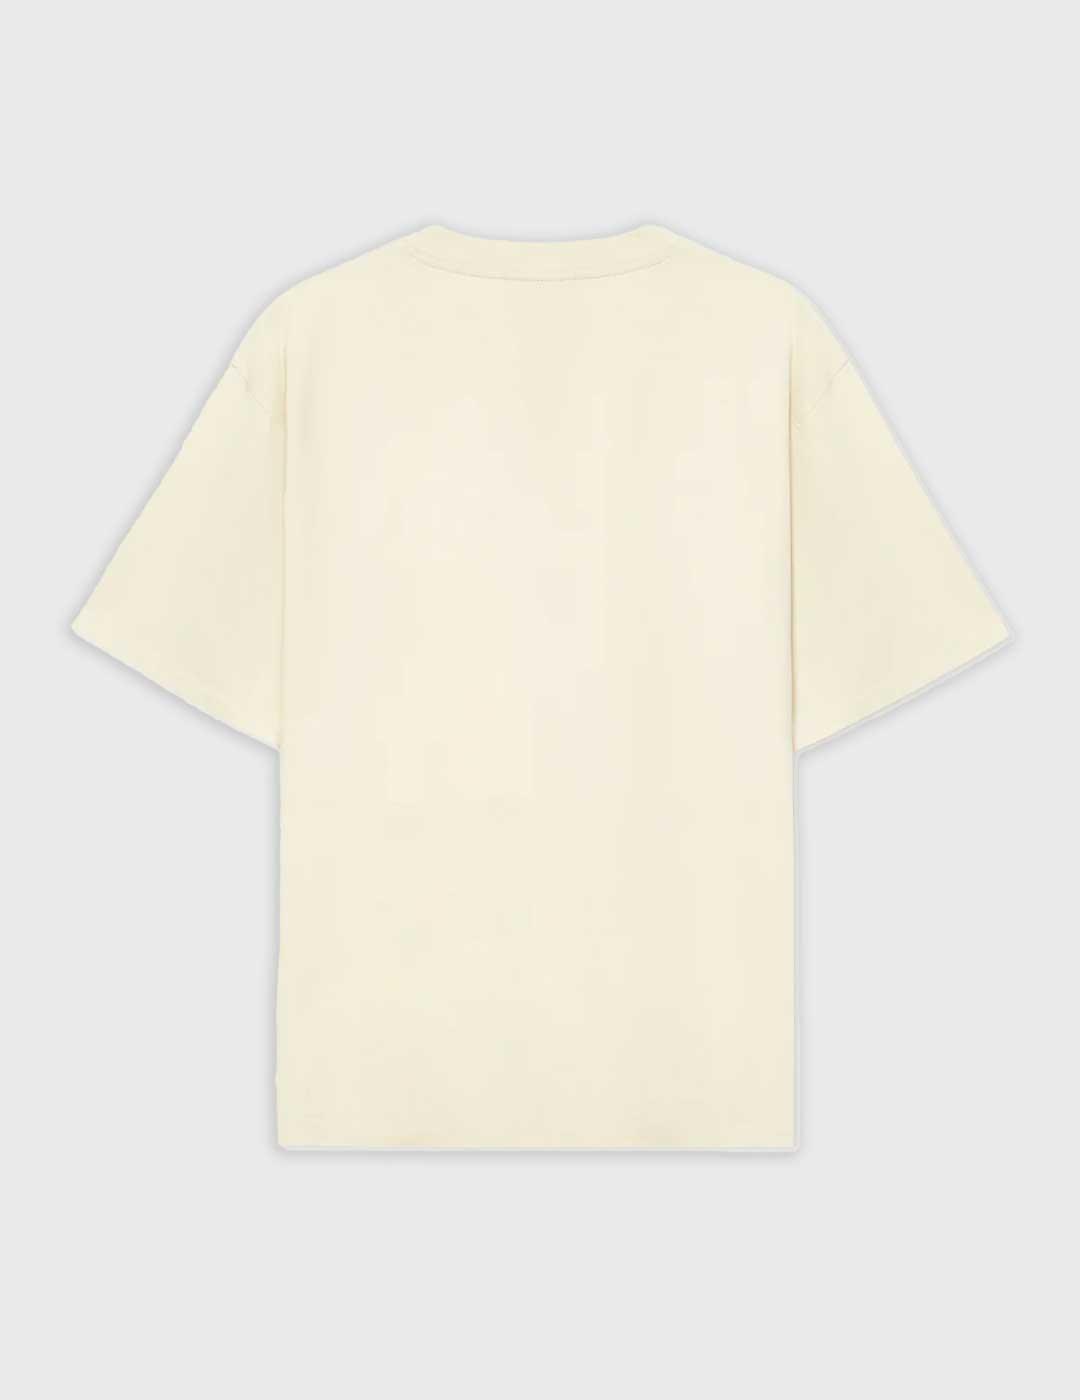 Camiseta Pompeii Brand Boxy Graphic beige para hombre